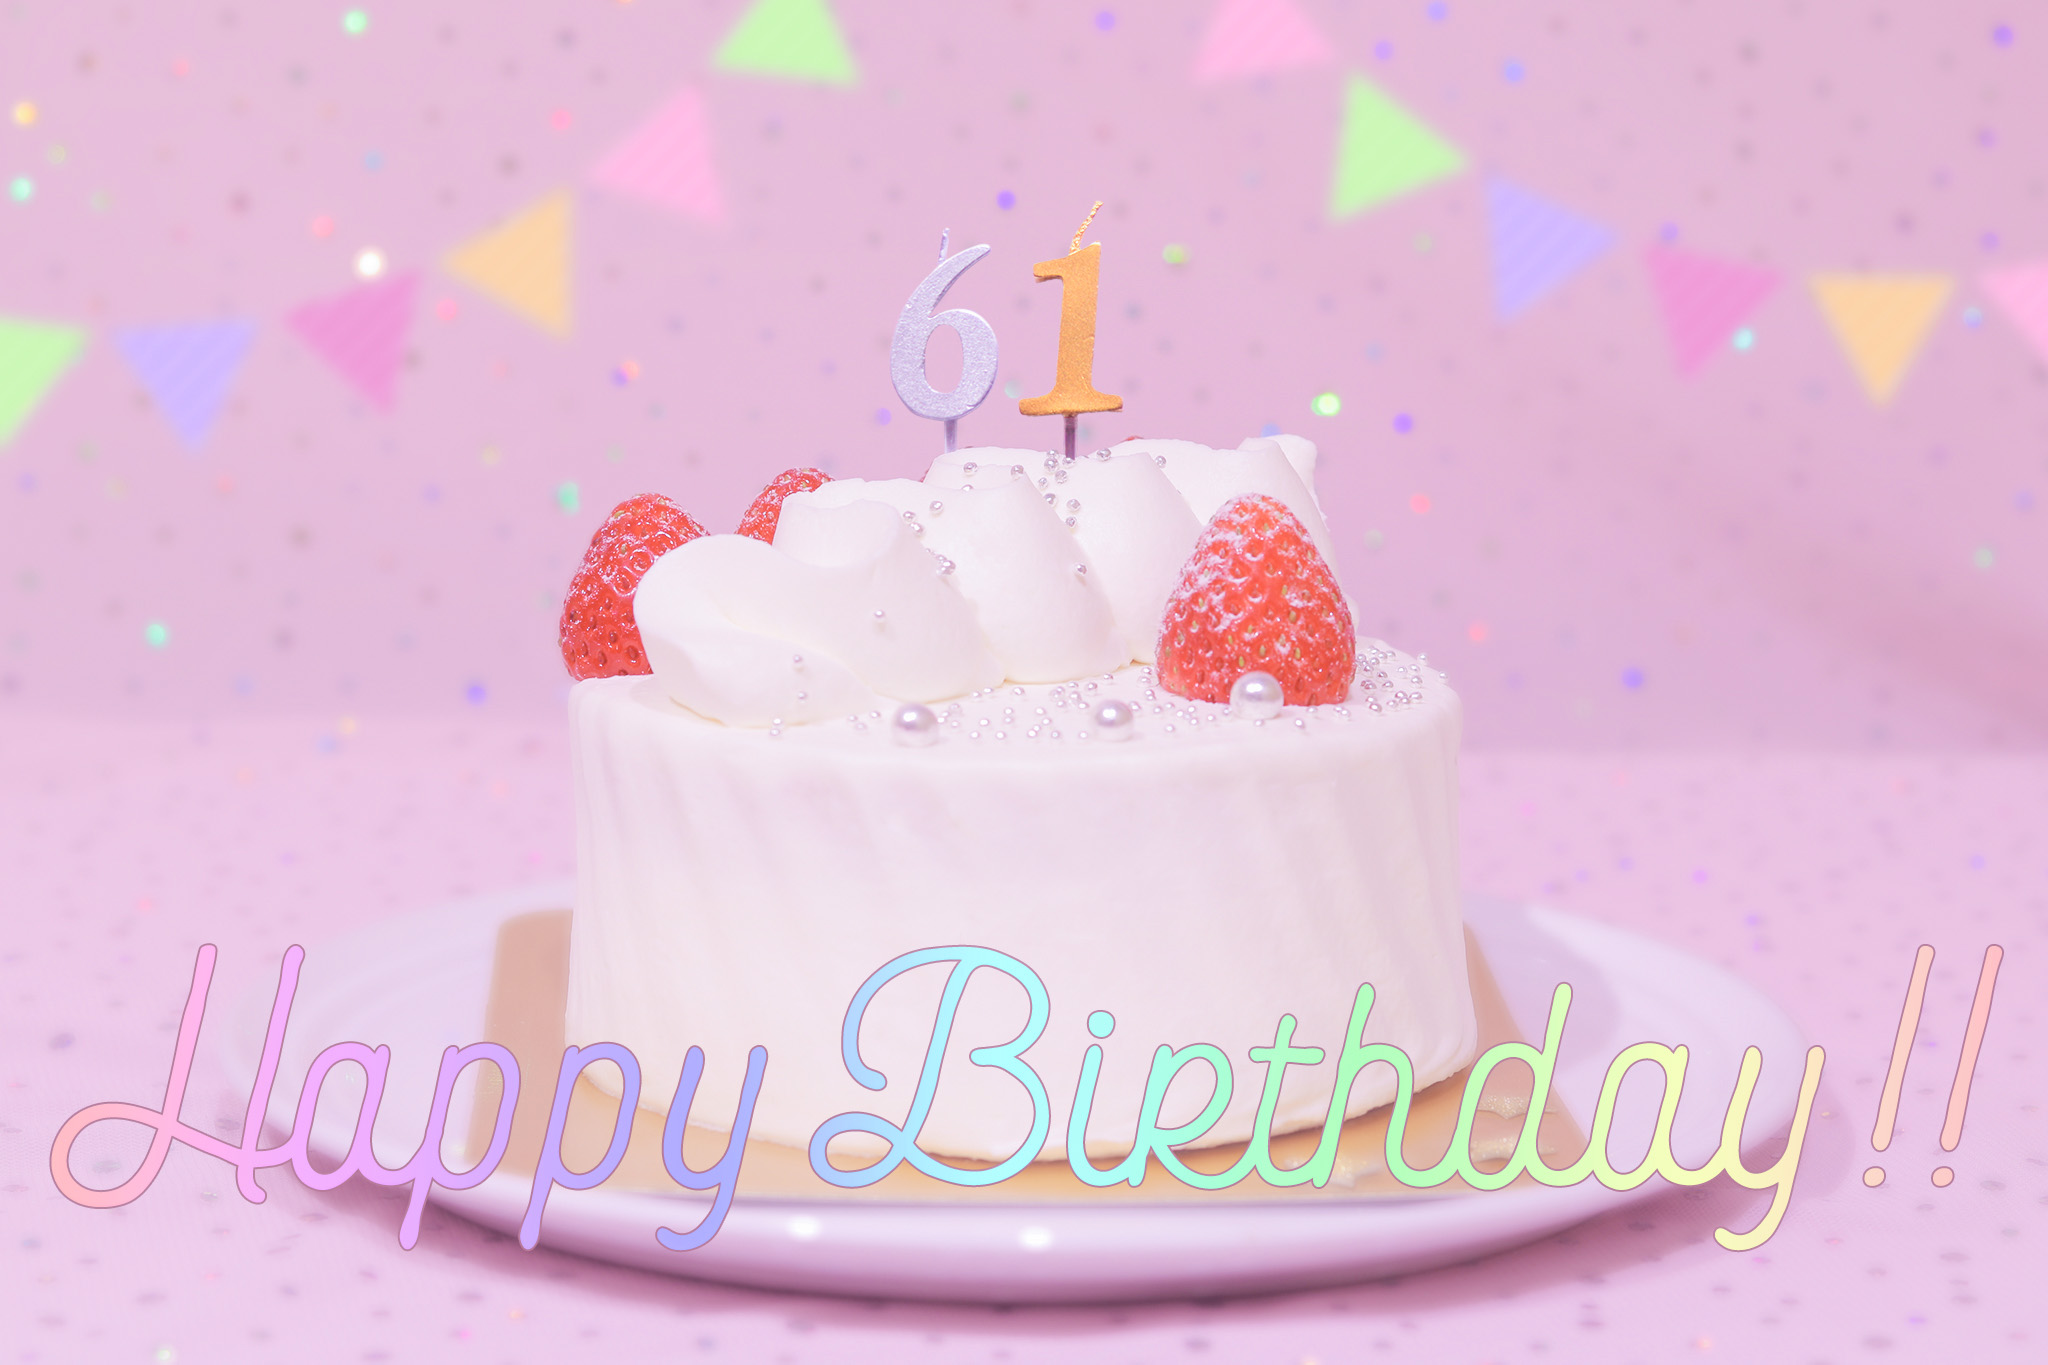 かわいい誕生日画像 ケーキとパステルカラーで可愛くお祝い 61歳編 のフリー画像 おしゃれなフリー写真素材 Girly Drop